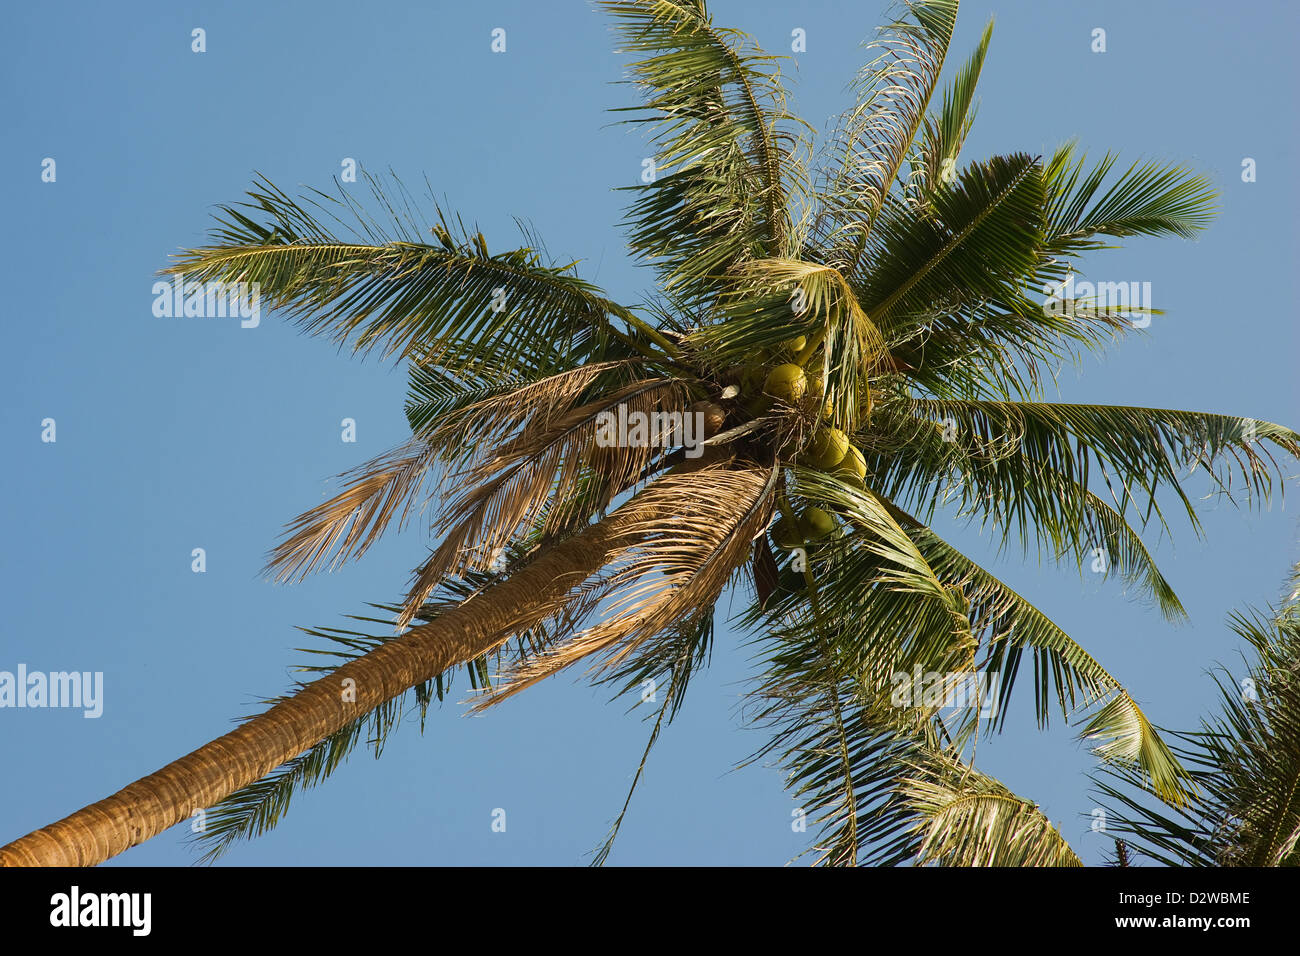 Kep, Cambodia, a coconut tree Stock Photo